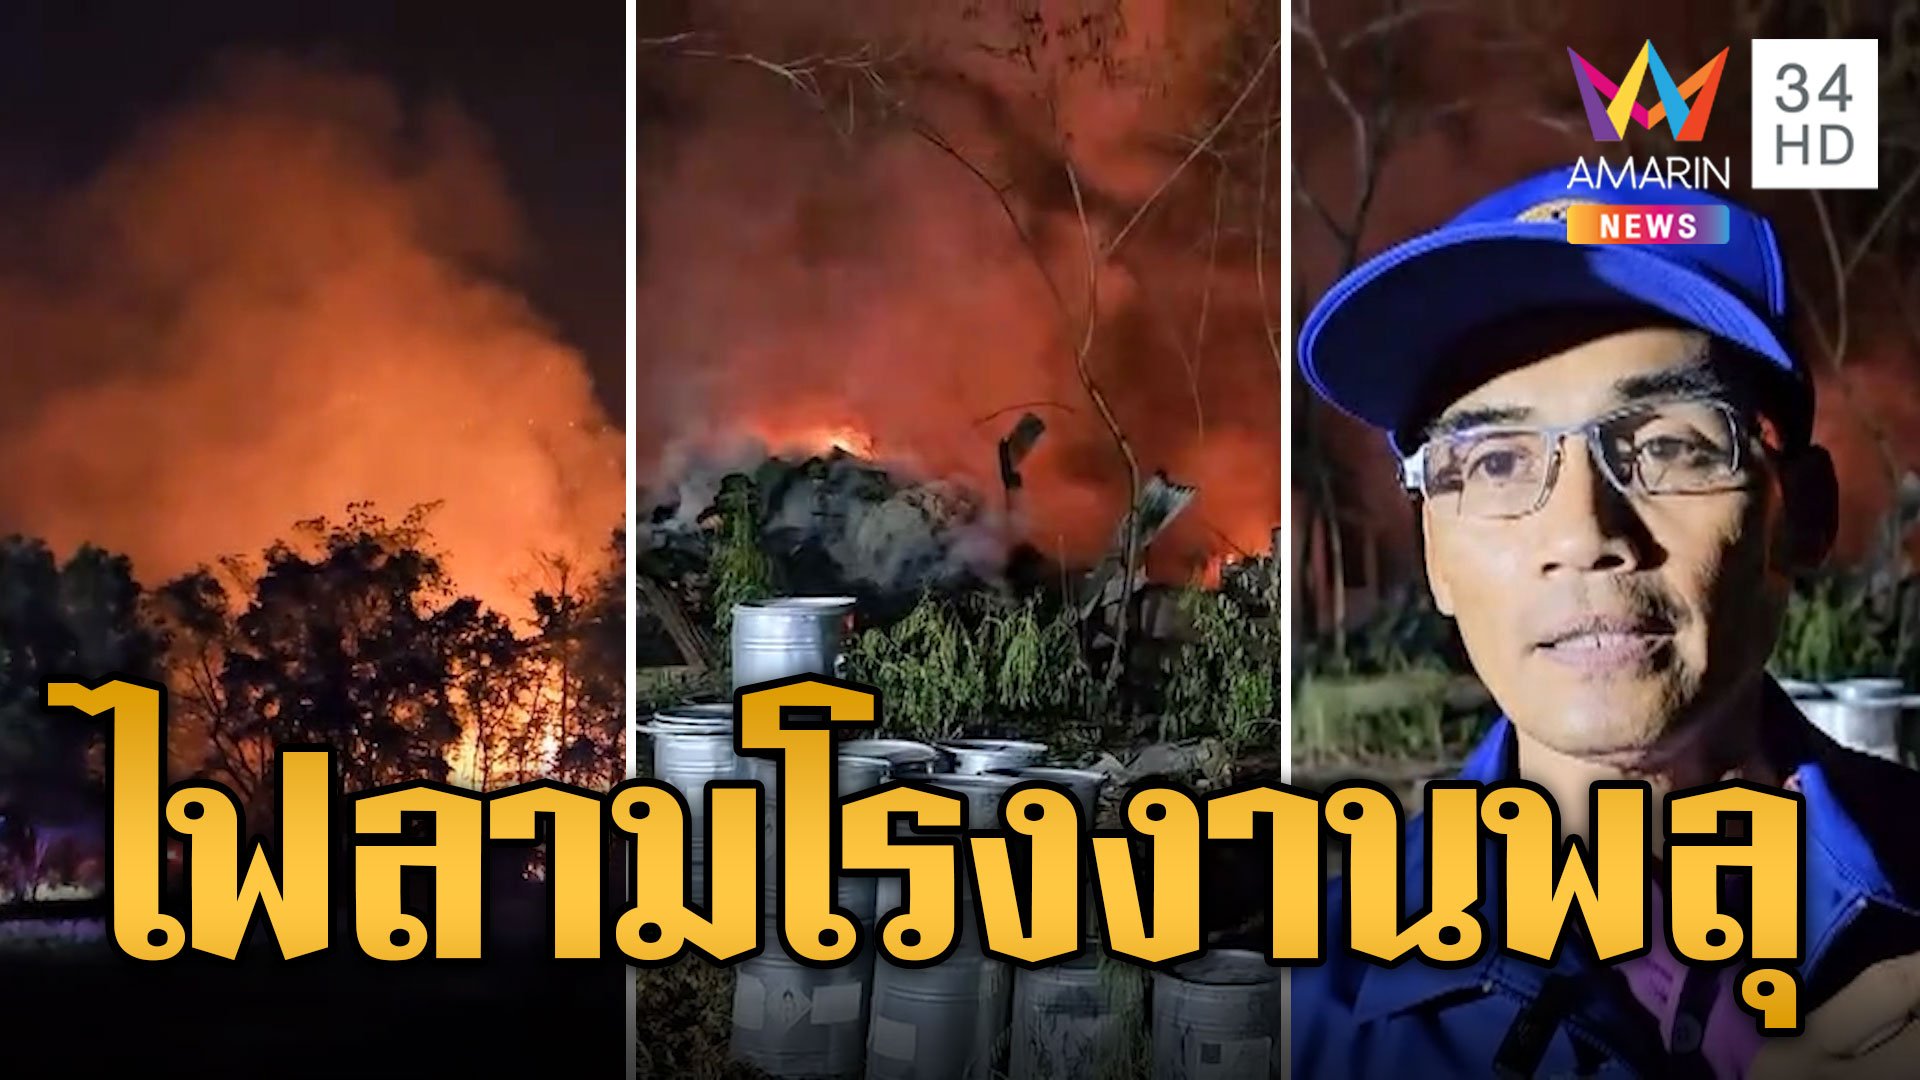 ชาวบ้านผวา! เผาหญ้าไฟไหม้ลุกลามเข้าโรงงานพลุ | ข่าวอรุณอมรินทร์ | 5 พ.ค. 67 | AMARIN TVHD34